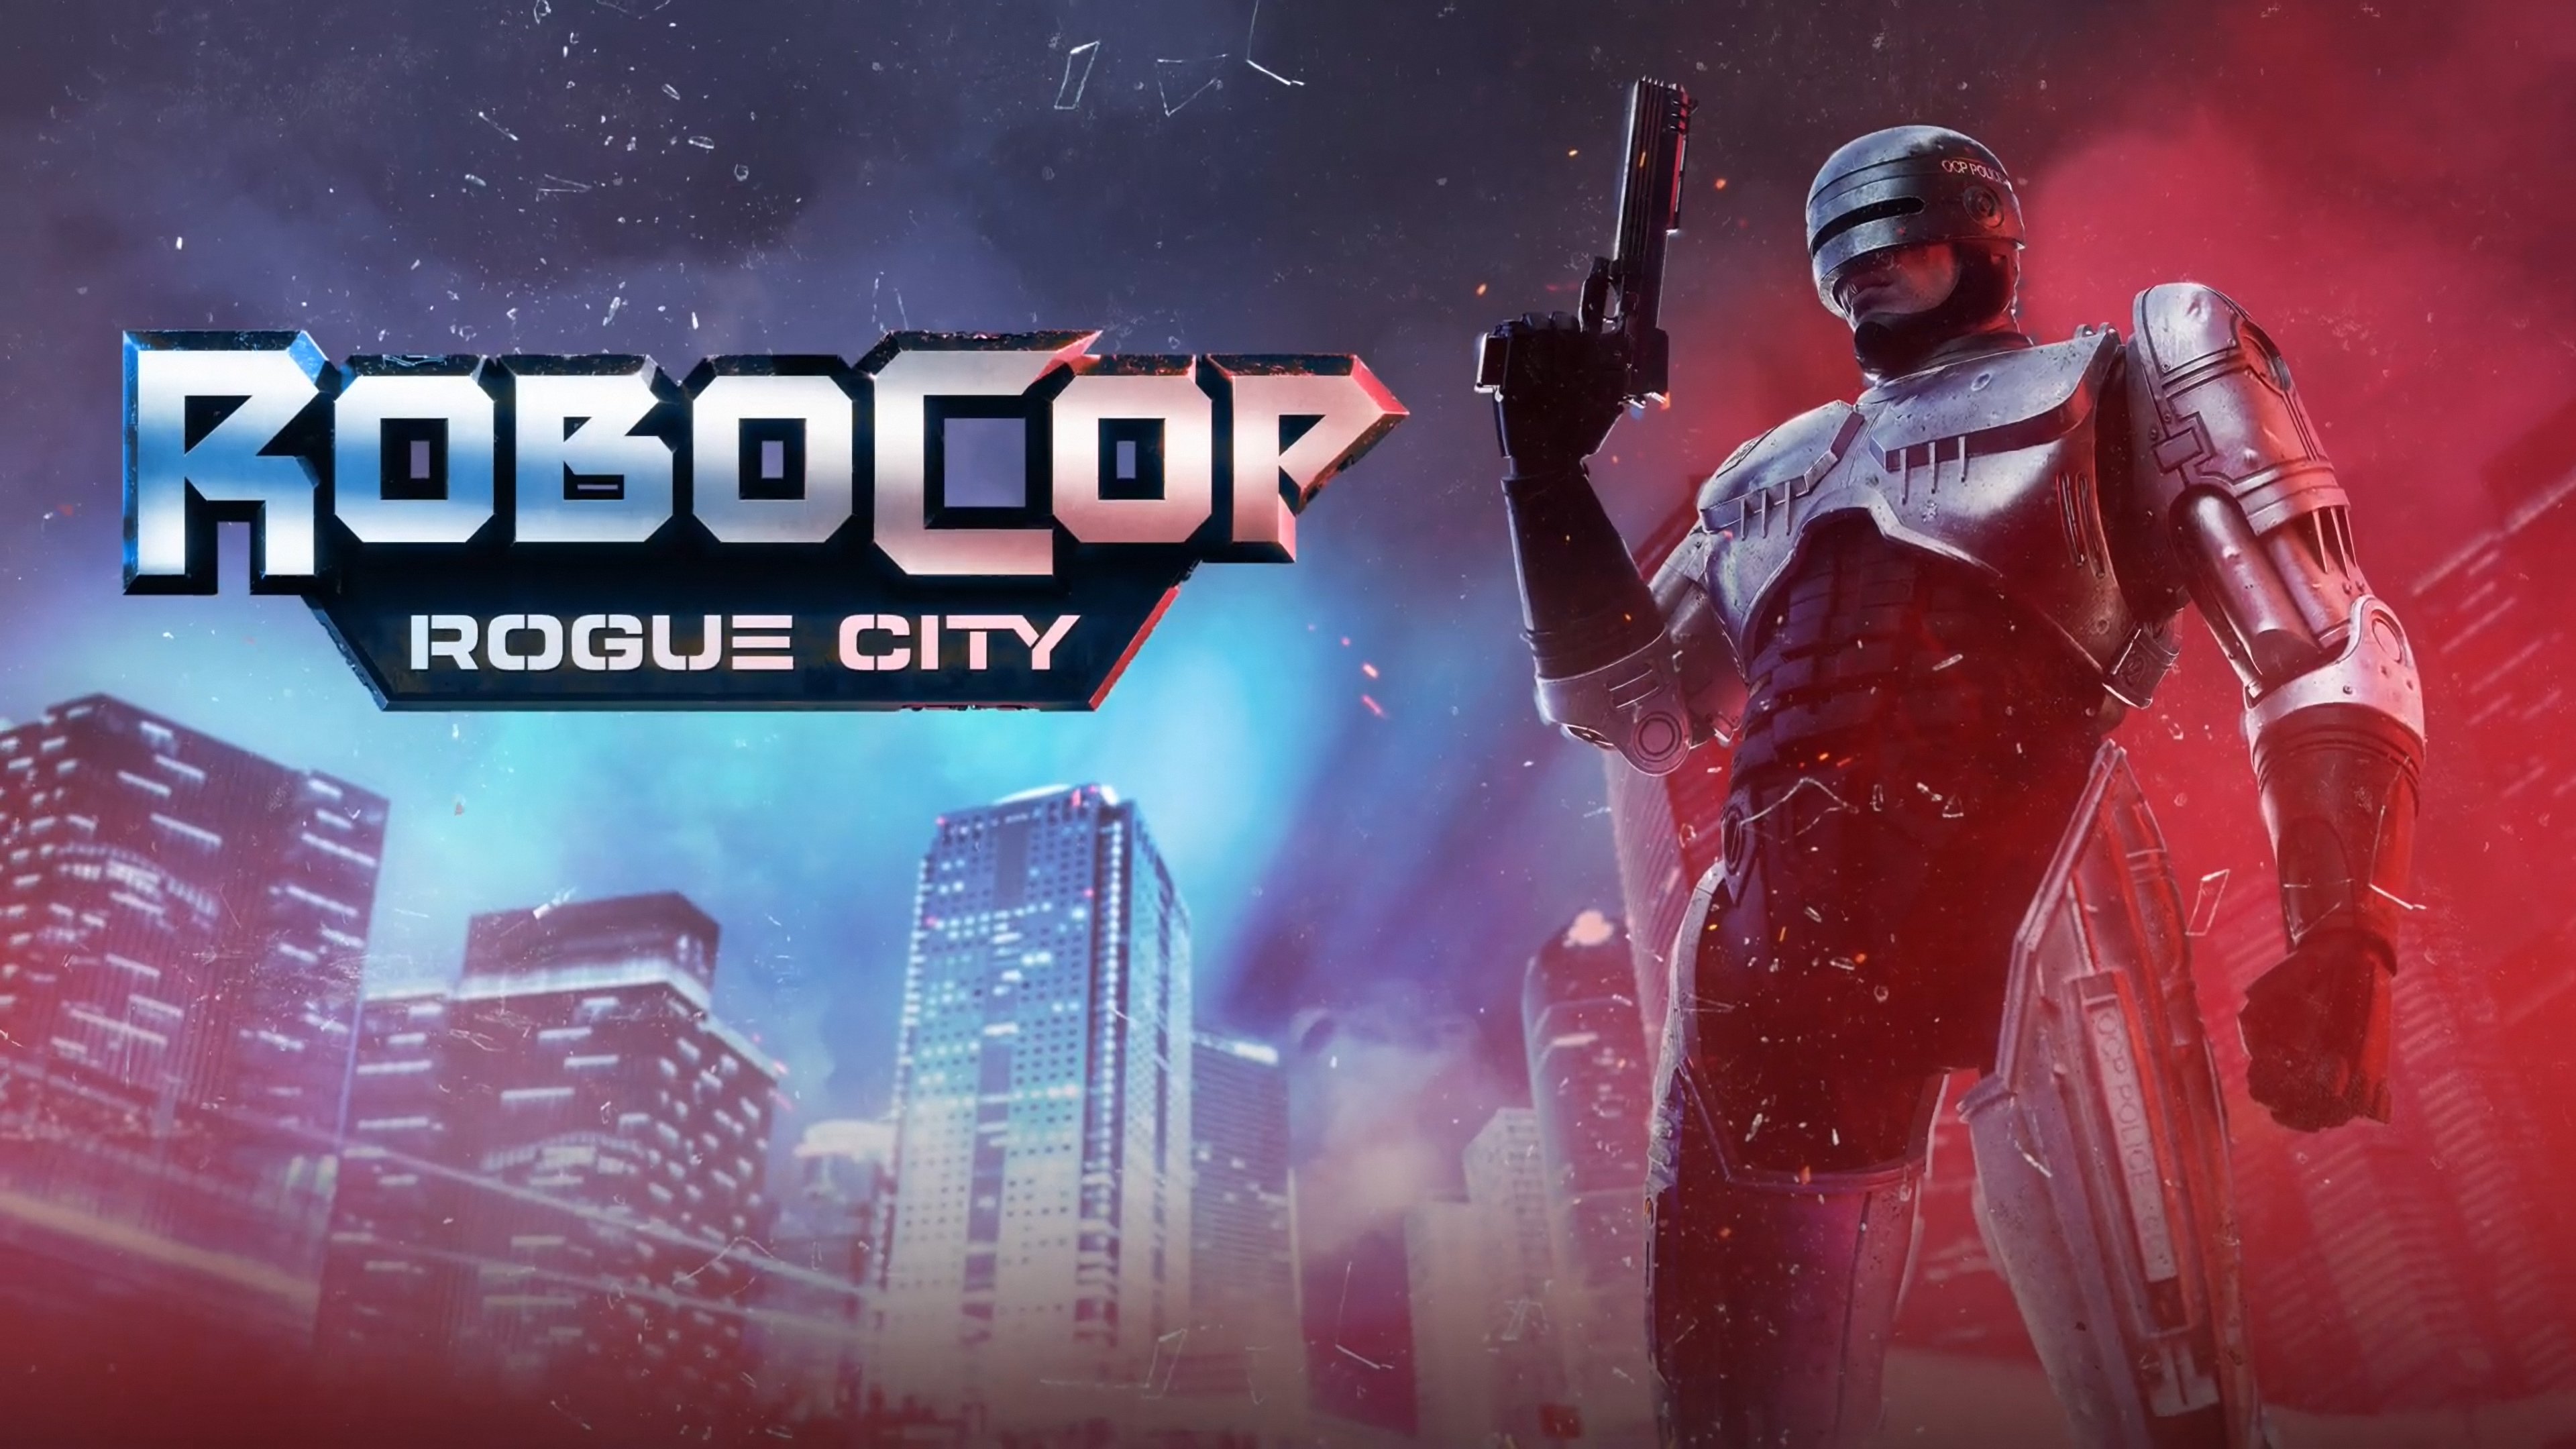 RoboCop Rogue City’s first gameplay trailer reveals that Peter Weller